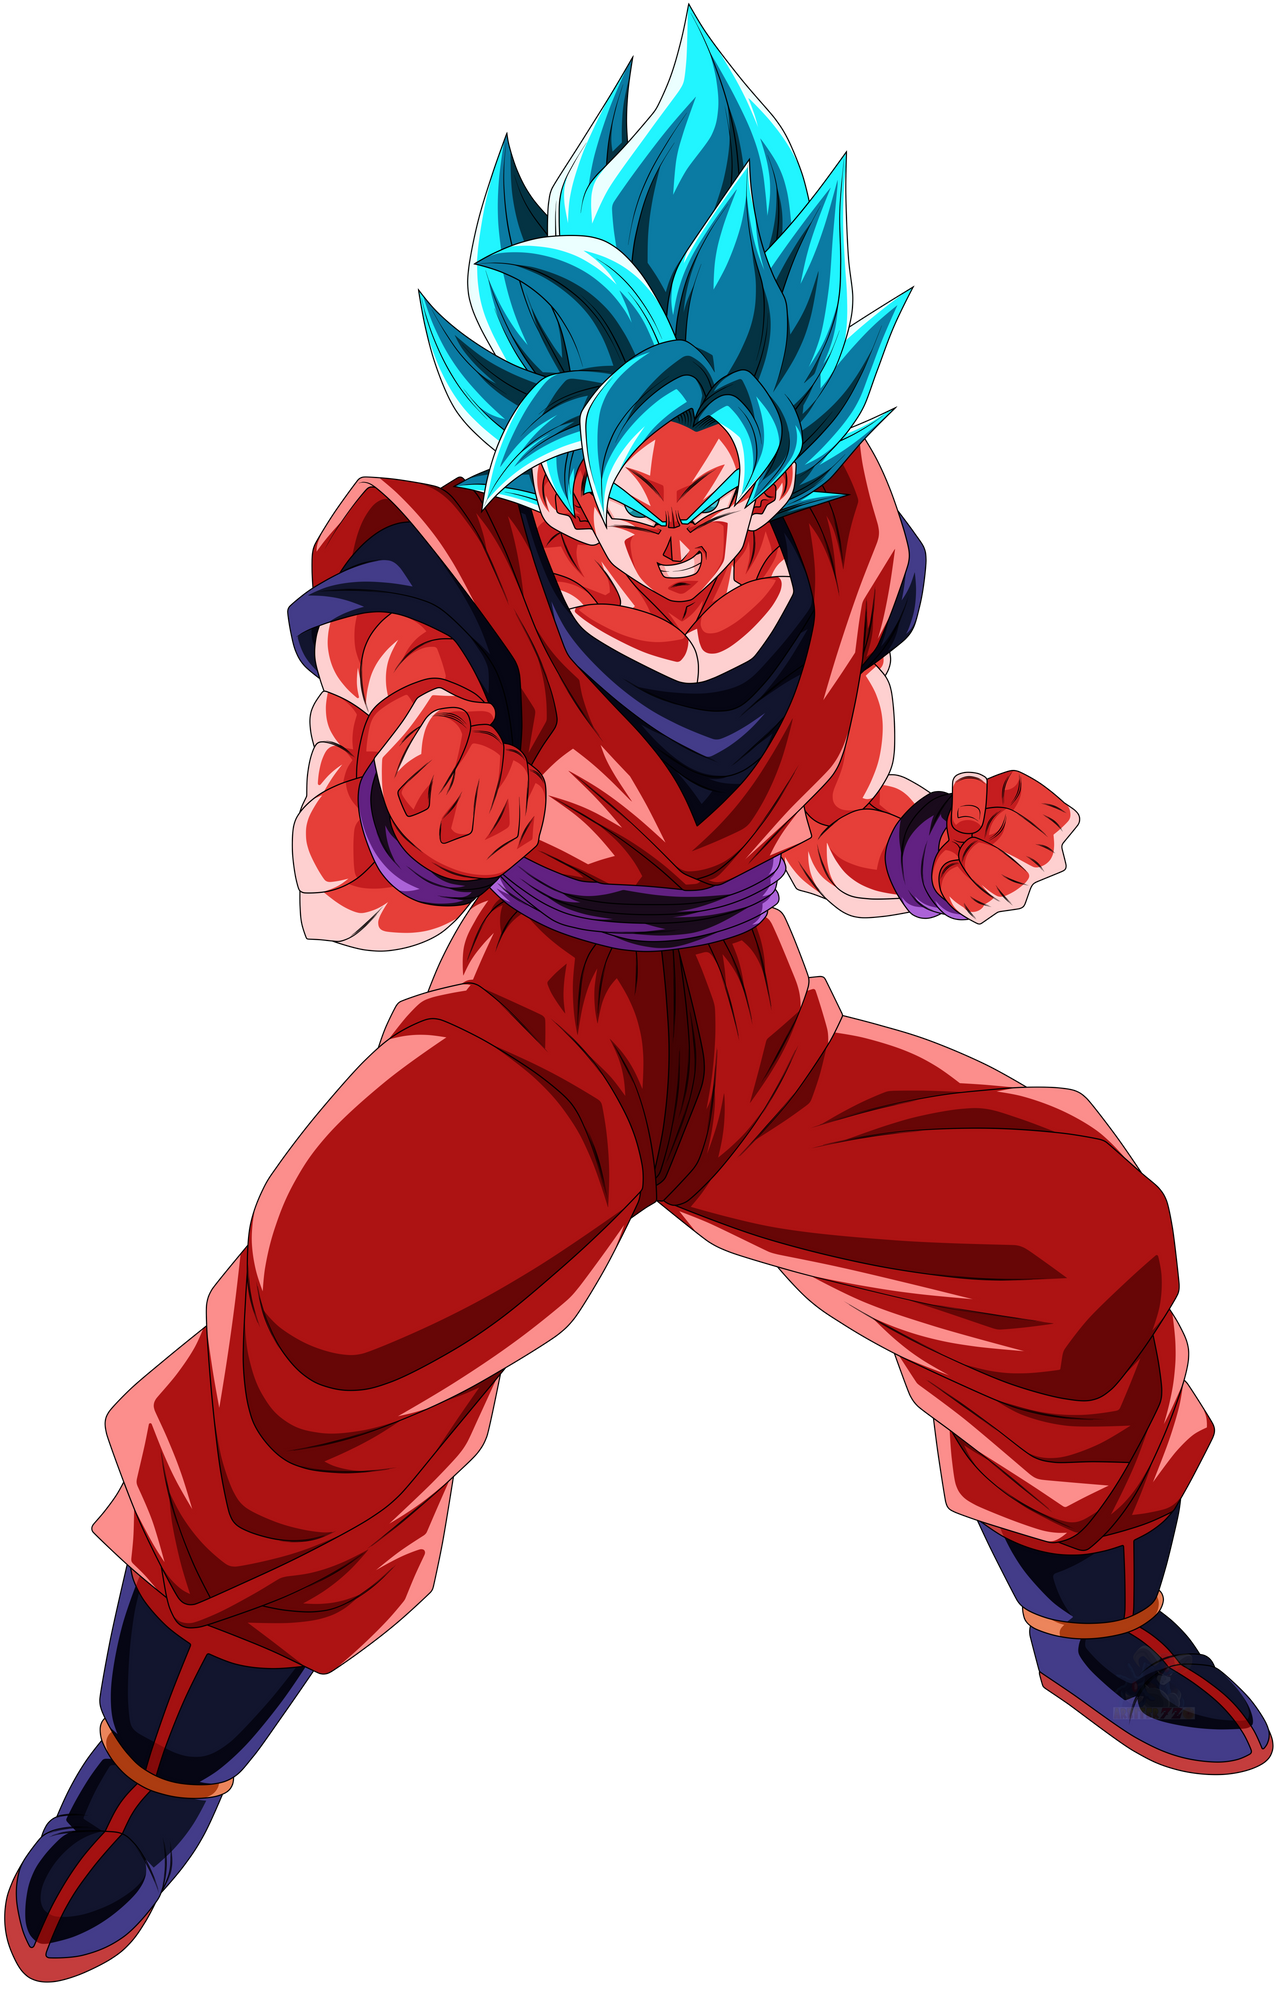 Goku Super Saiyan God by crismarshall on DeviantArt